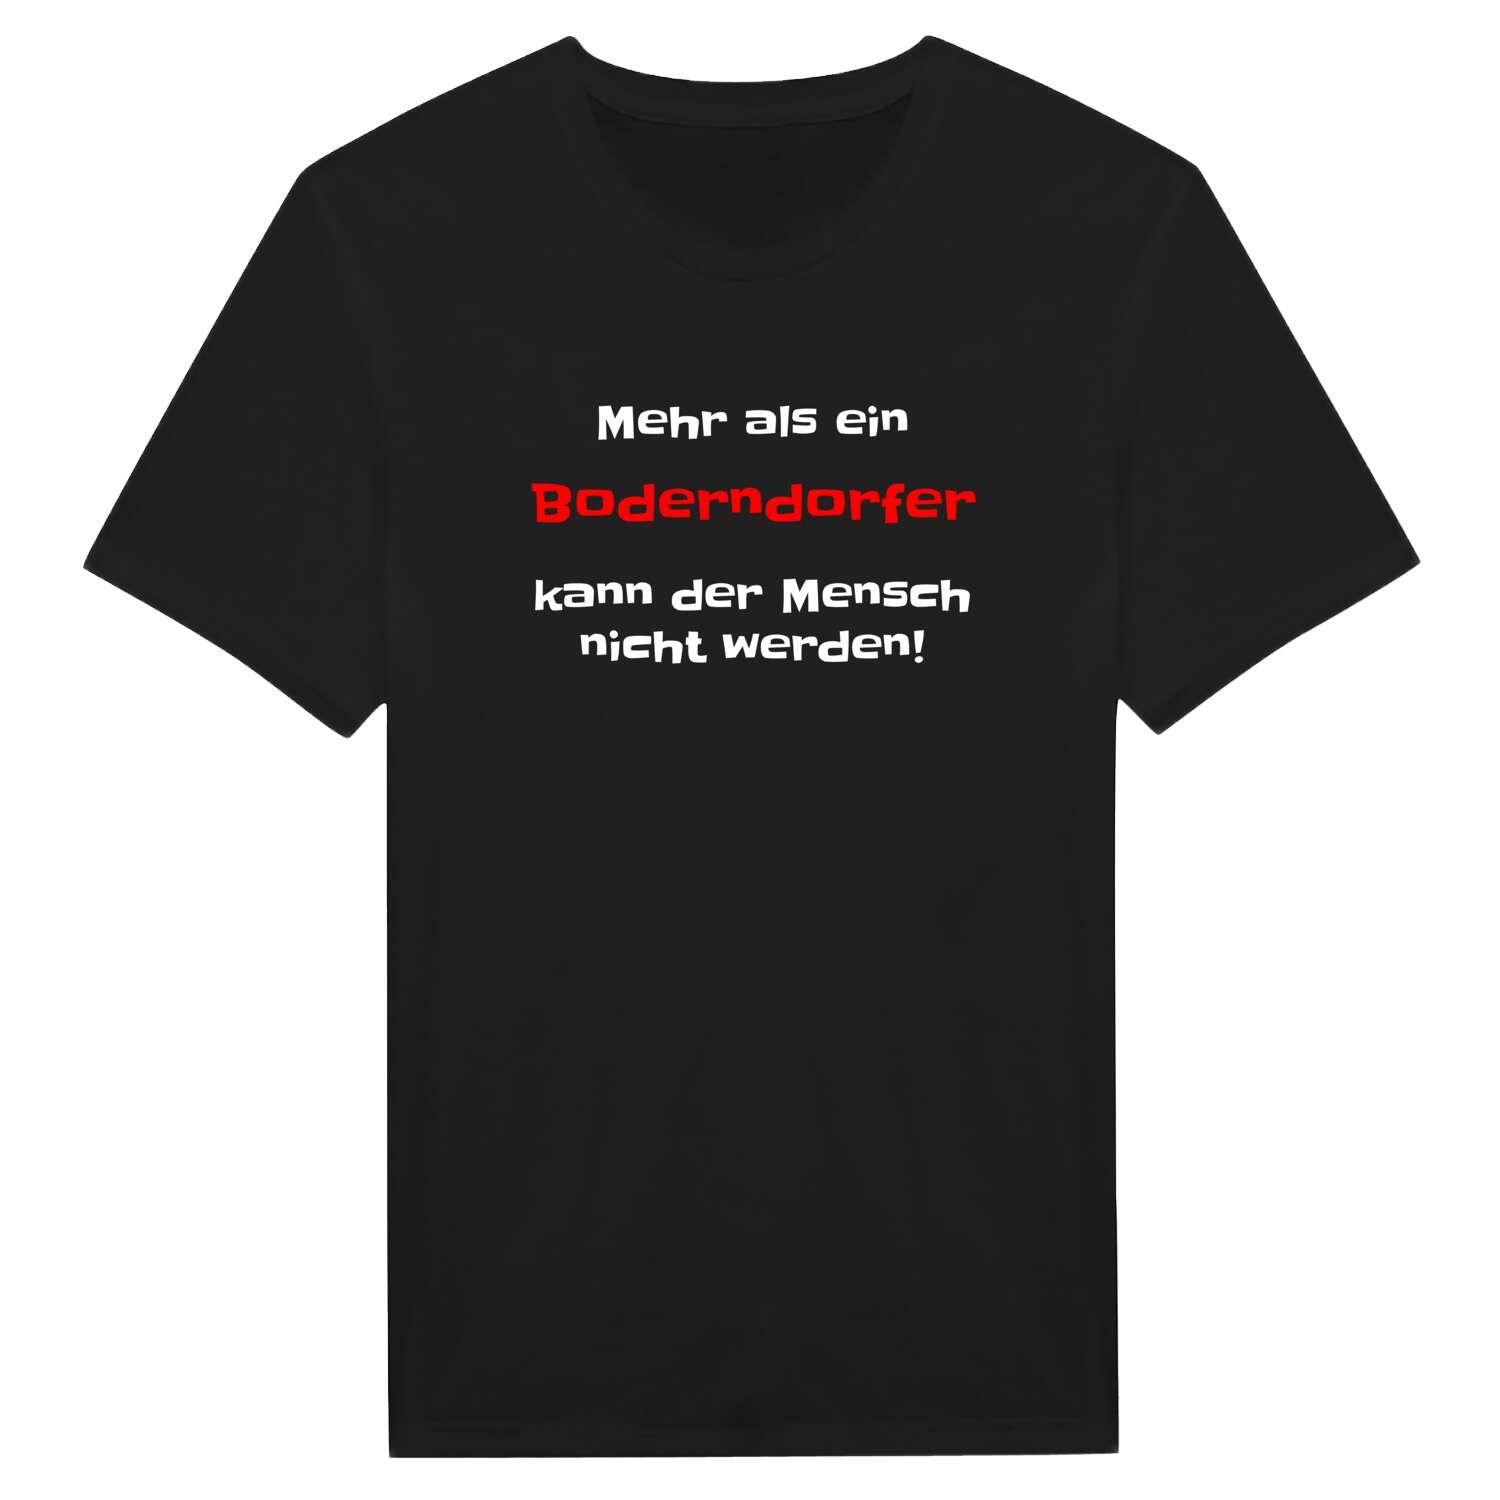 Boderndorf T-Shirt »Mehr als ein«